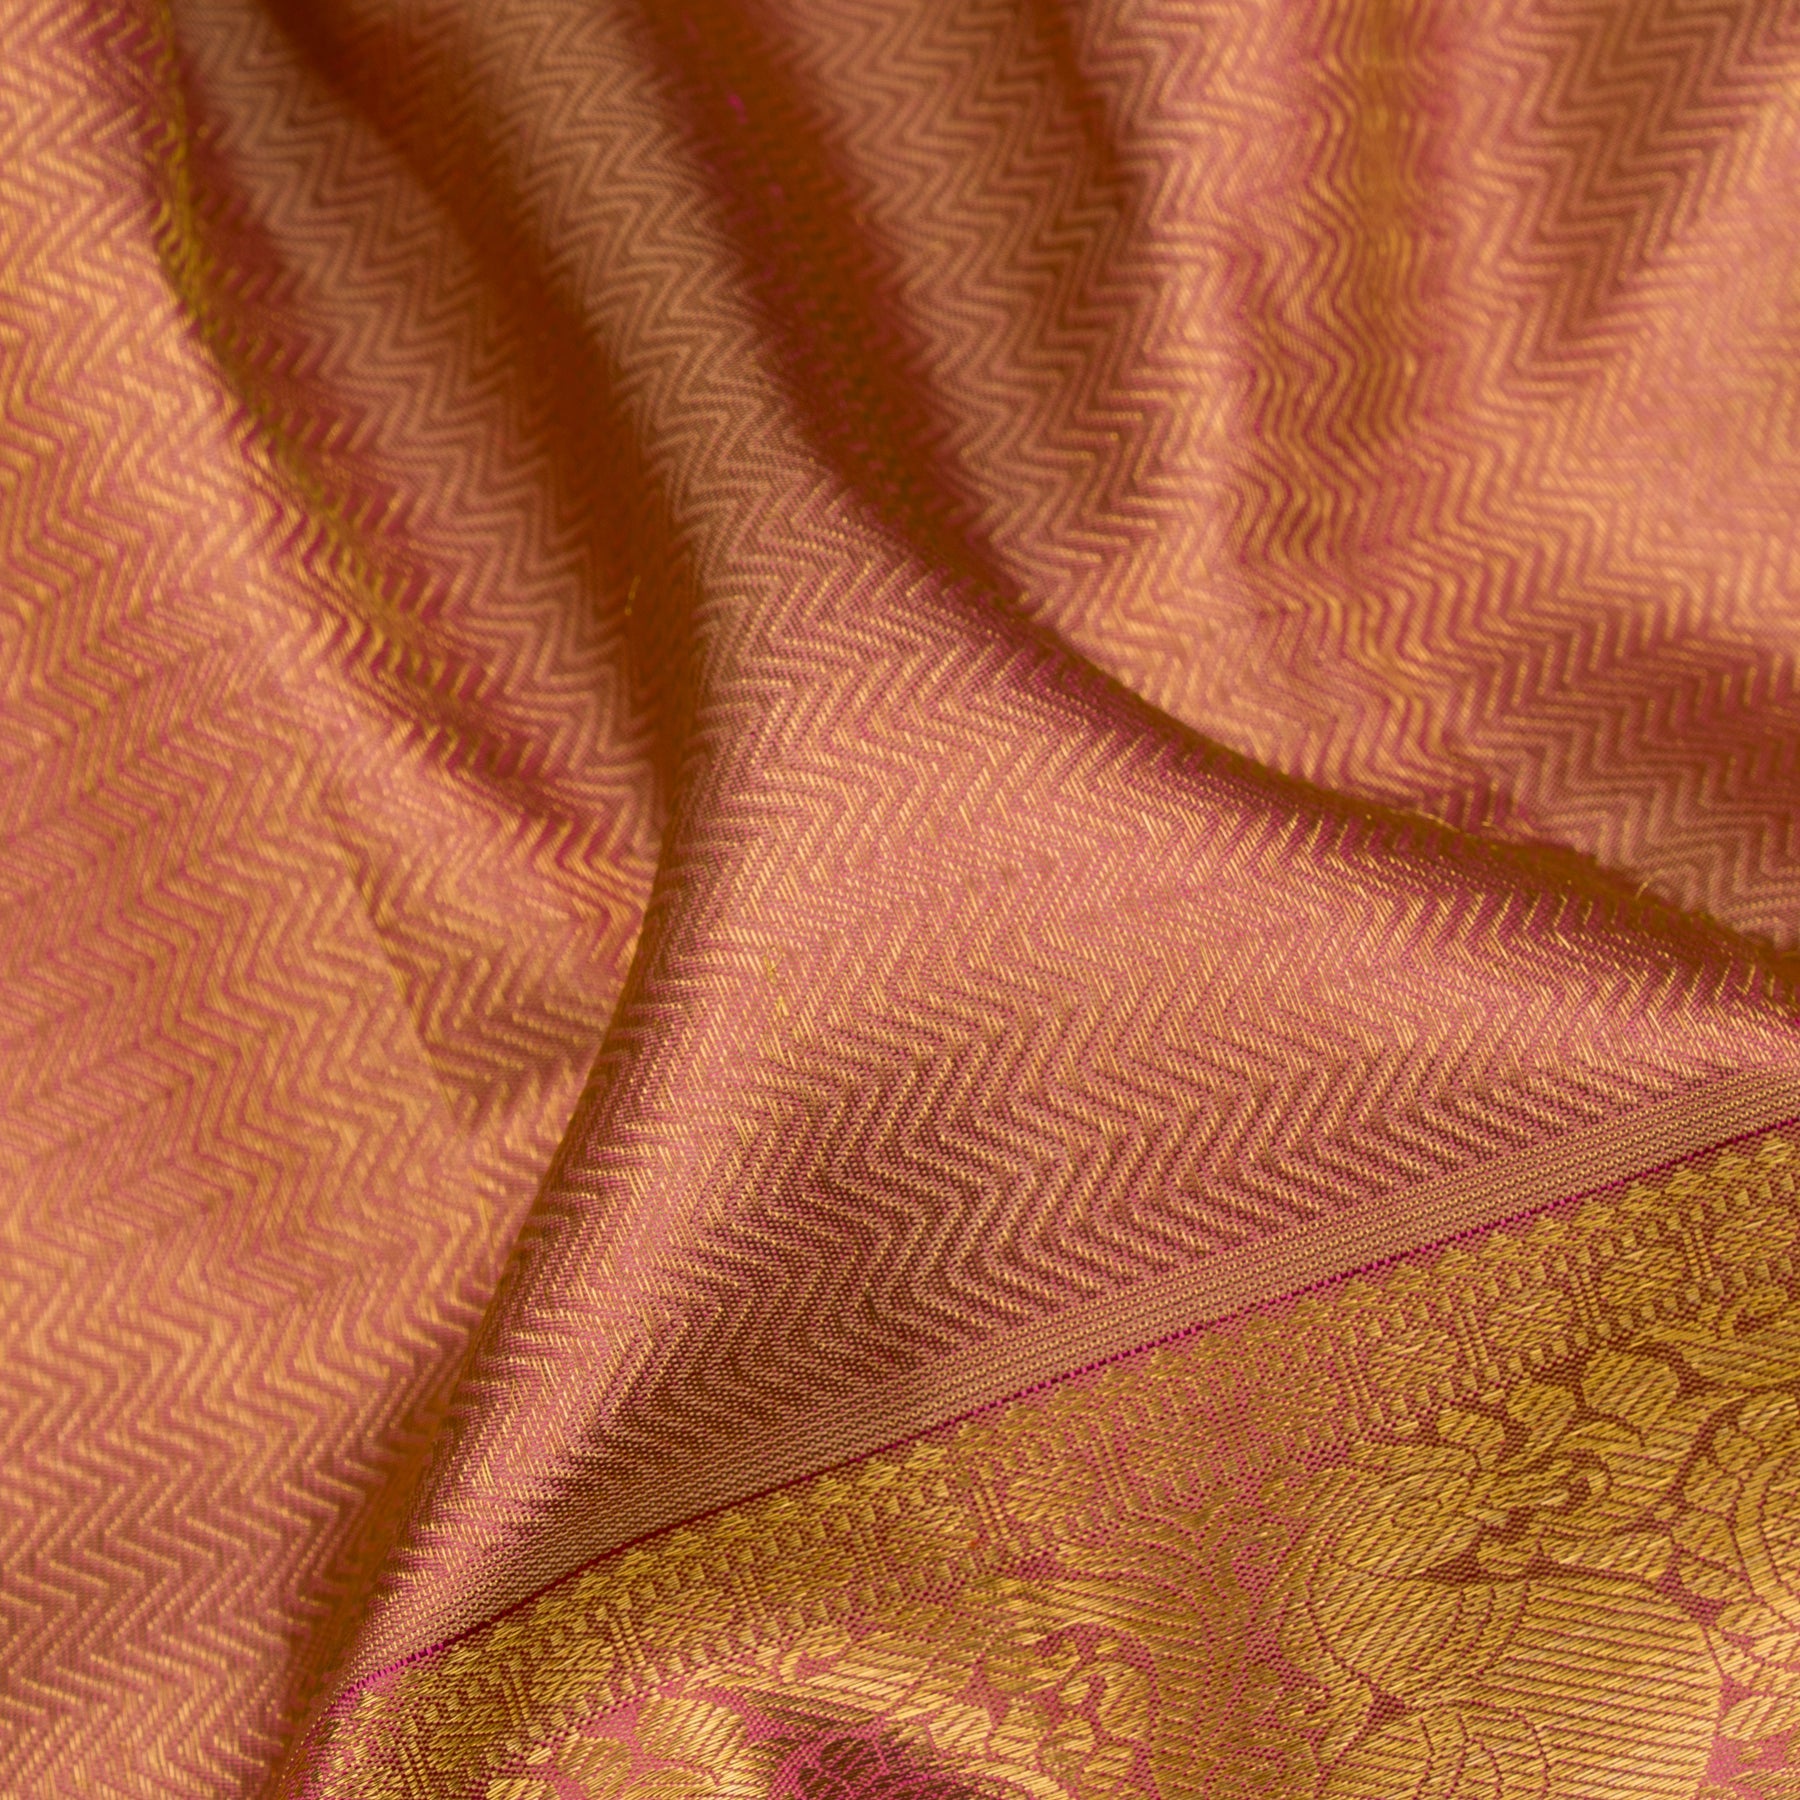 Kanakavalli Kanjivaram Silk Sari 23-110-HS001-06894 - Fabric View